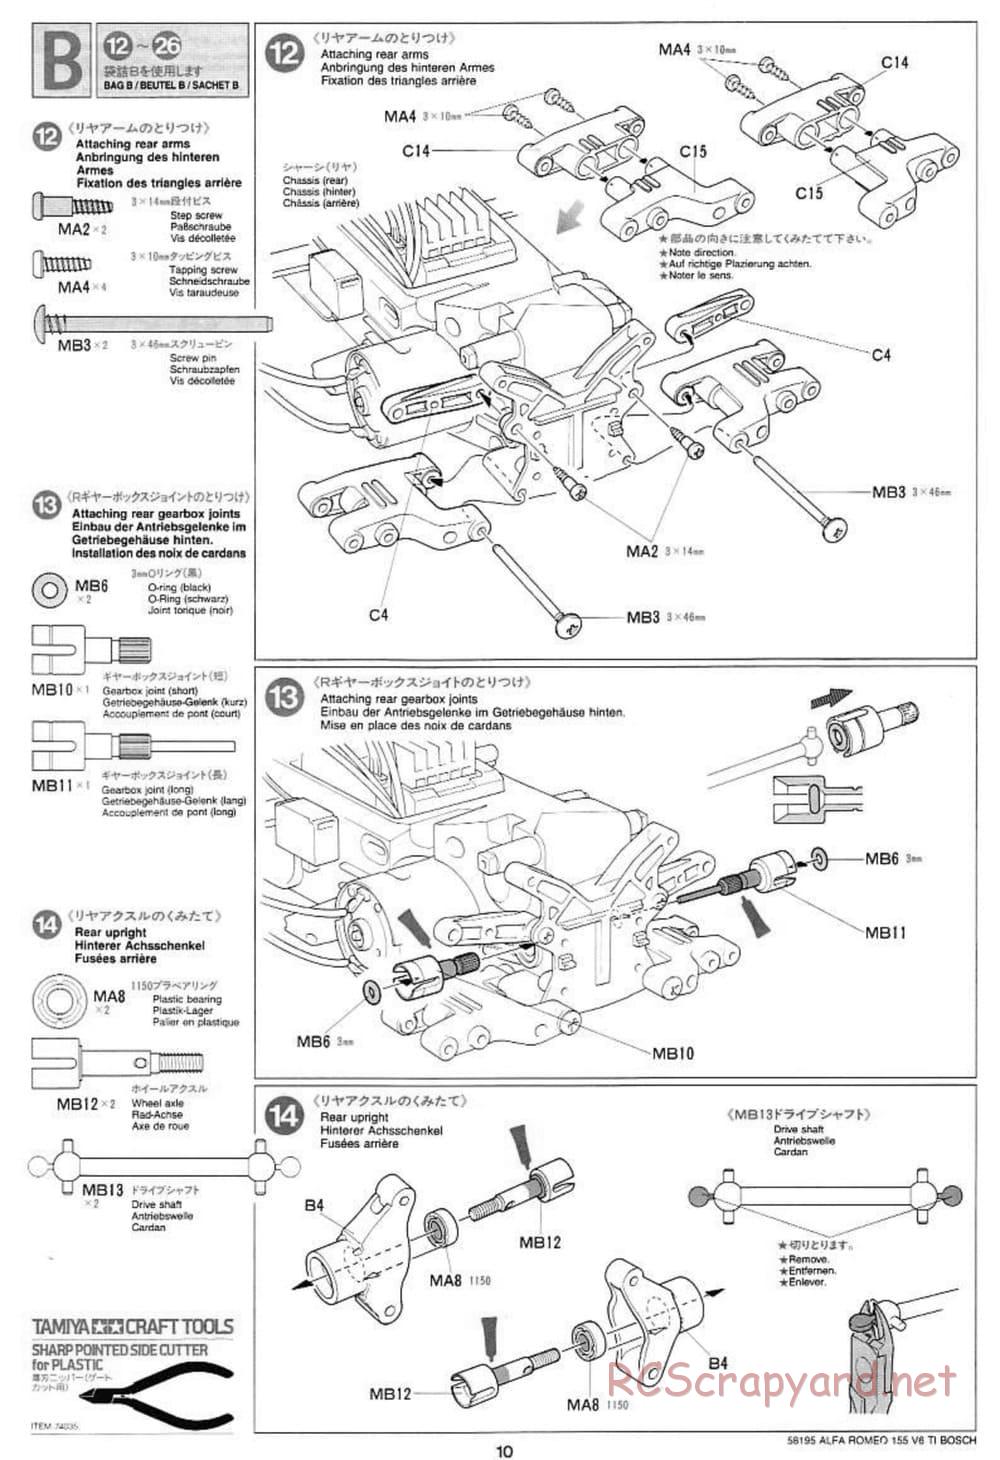 Tamiya - Alfa Romeo 155 V6 TI BOSCH - TL-01 Chassis - Manual - Page 10